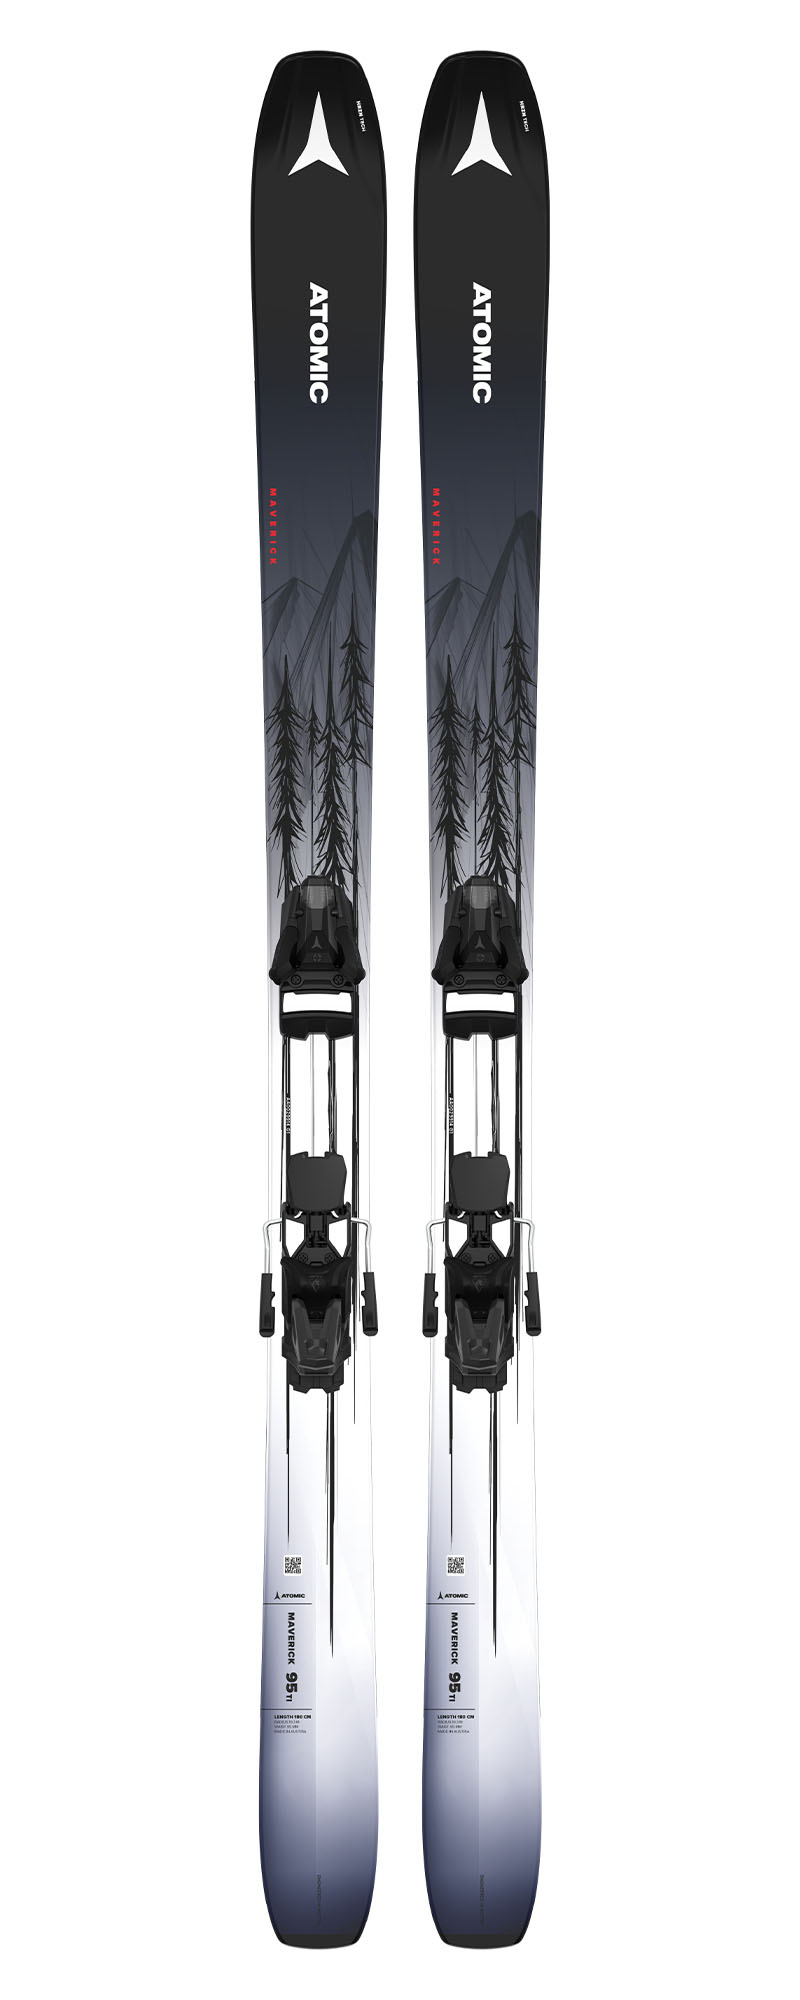 Горные лыжи с креплениями ATOMIC MAVERICK 95 TI + STR 14 GW Black/White/Red